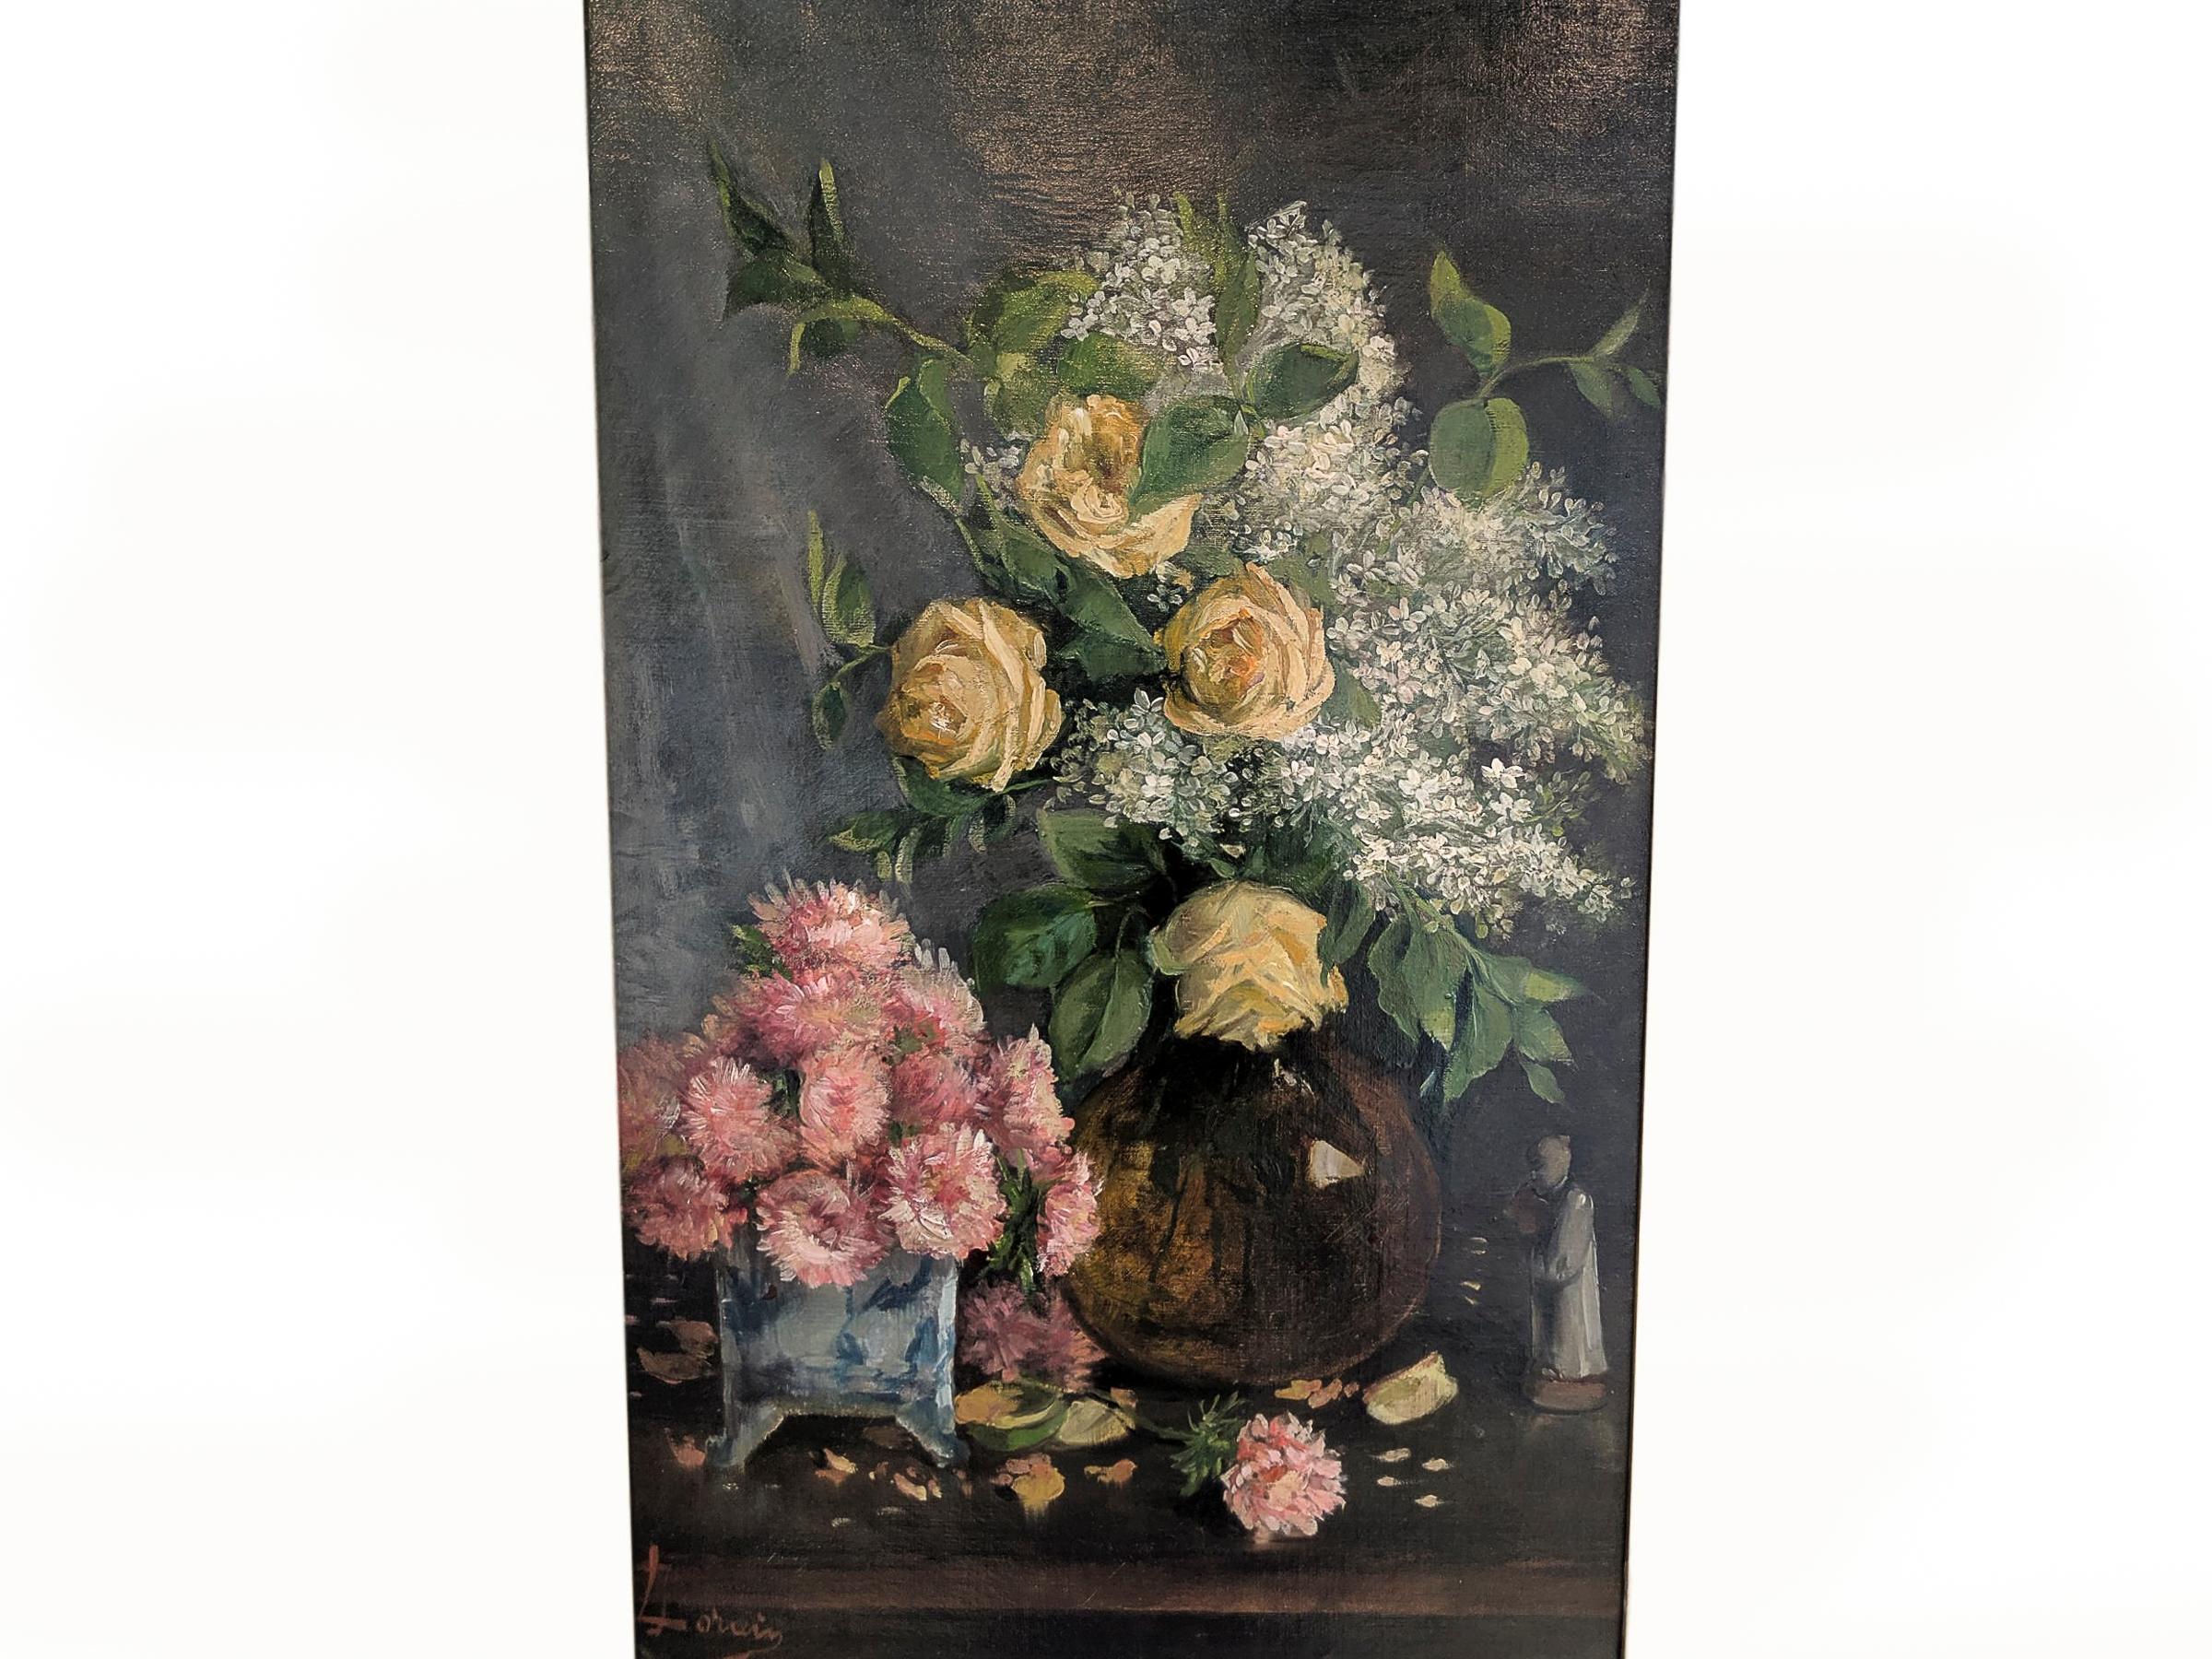 Stillleben in Öl auf Leinwand aus dem späten 19. Jahrhundert mit gelben Rosen und Flieder in einer Braunglasvase und rosa Astern in einem blauen Übertopf aus Porzellan. Gezeichnet: J. Lorain.